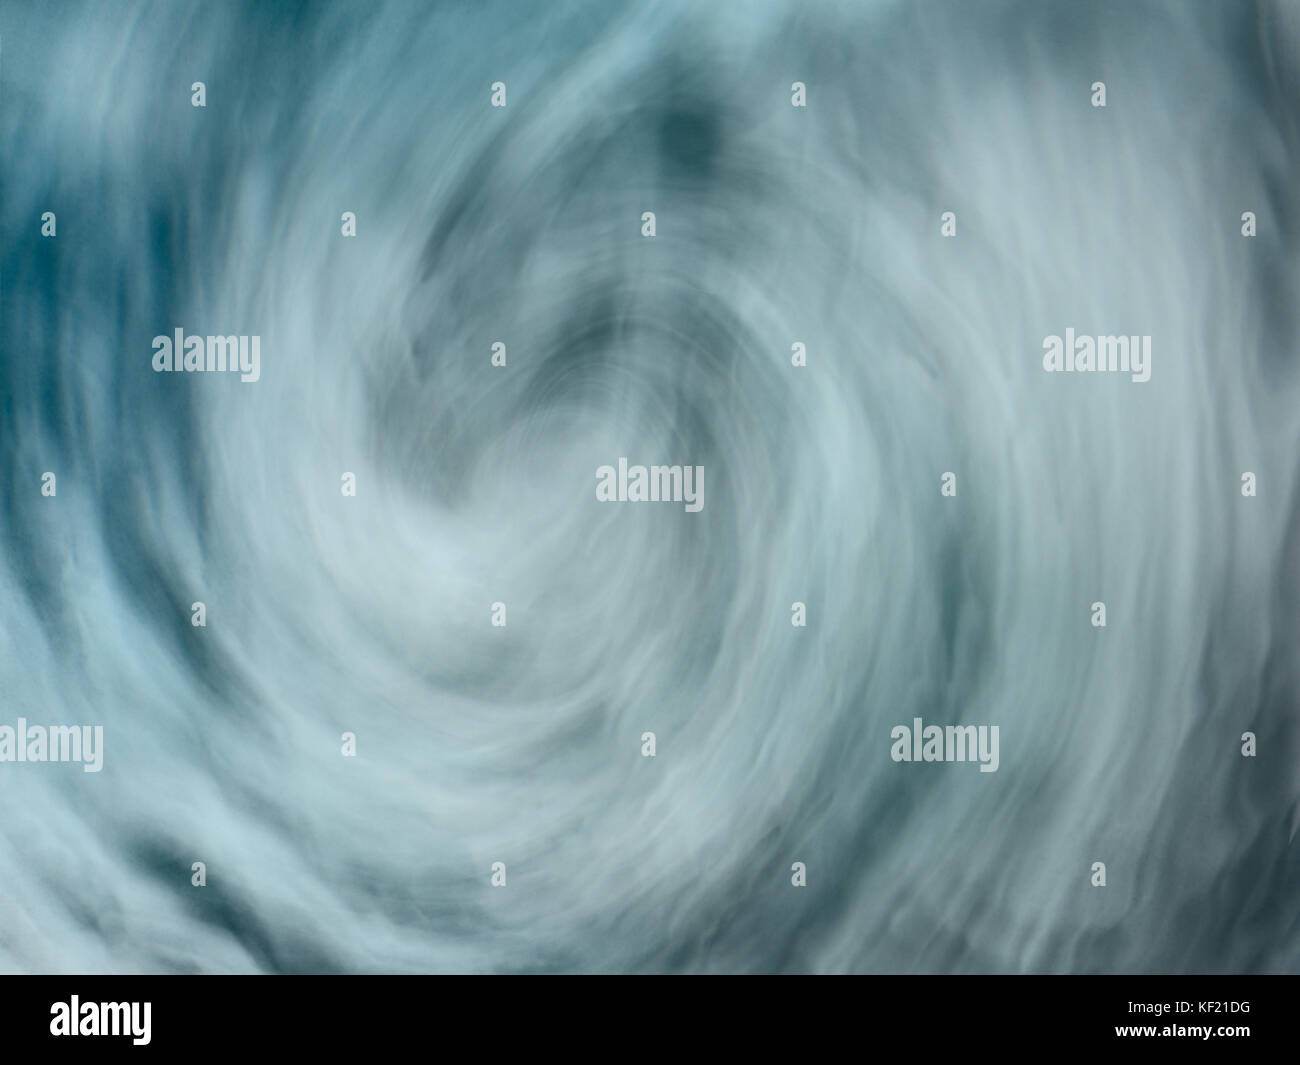 Abstrakte Veranschaulichung stormy blue water Strudel Strudel Stockfoto